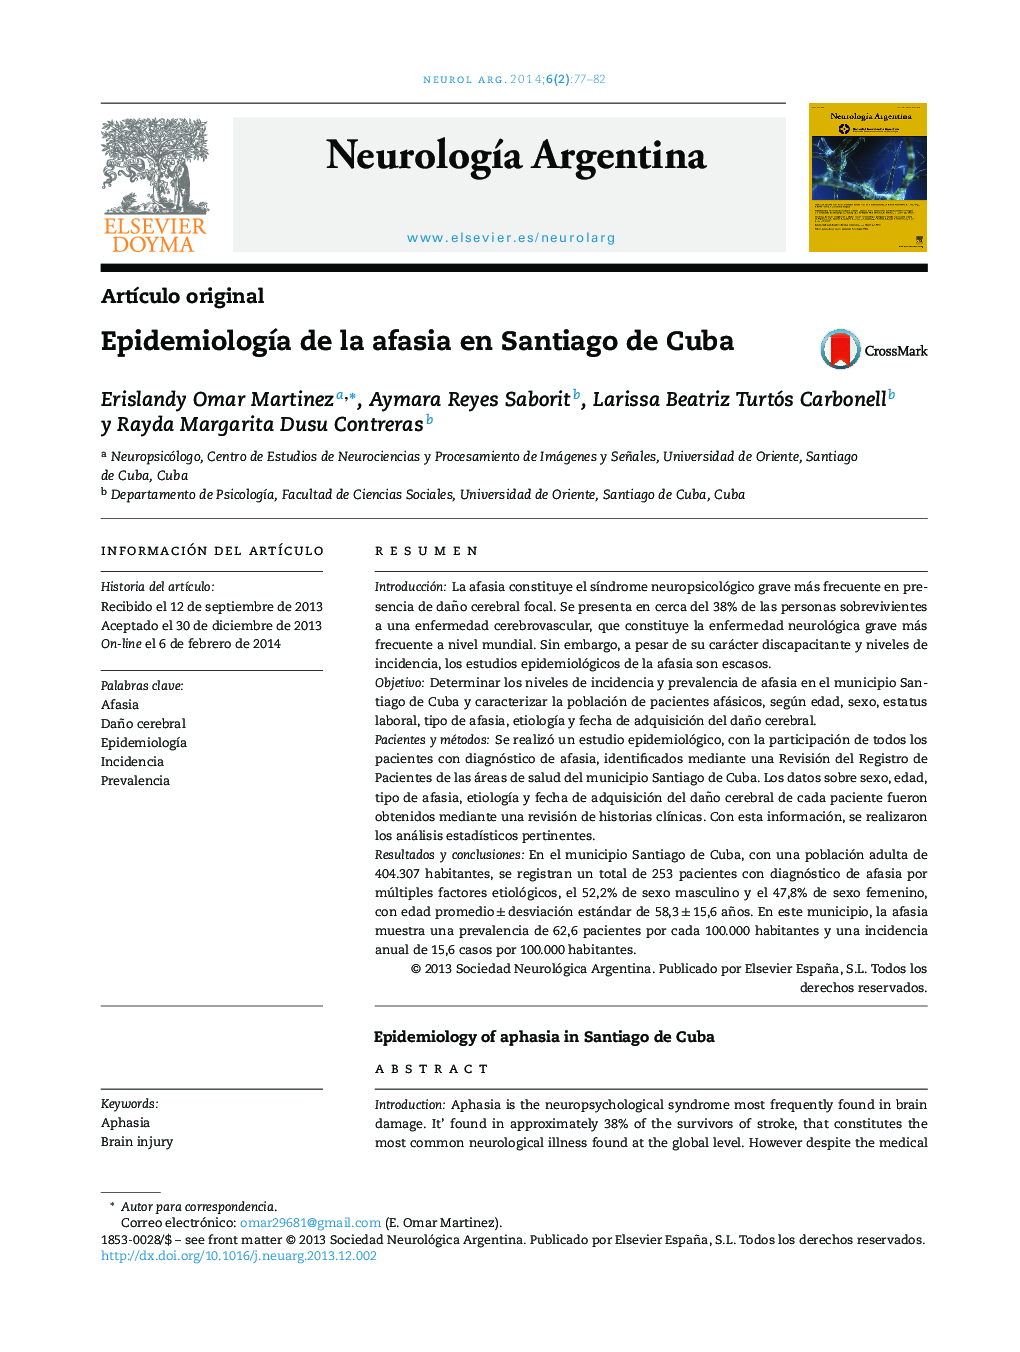 Epidemiología de la afasia en Santiago de Cuba